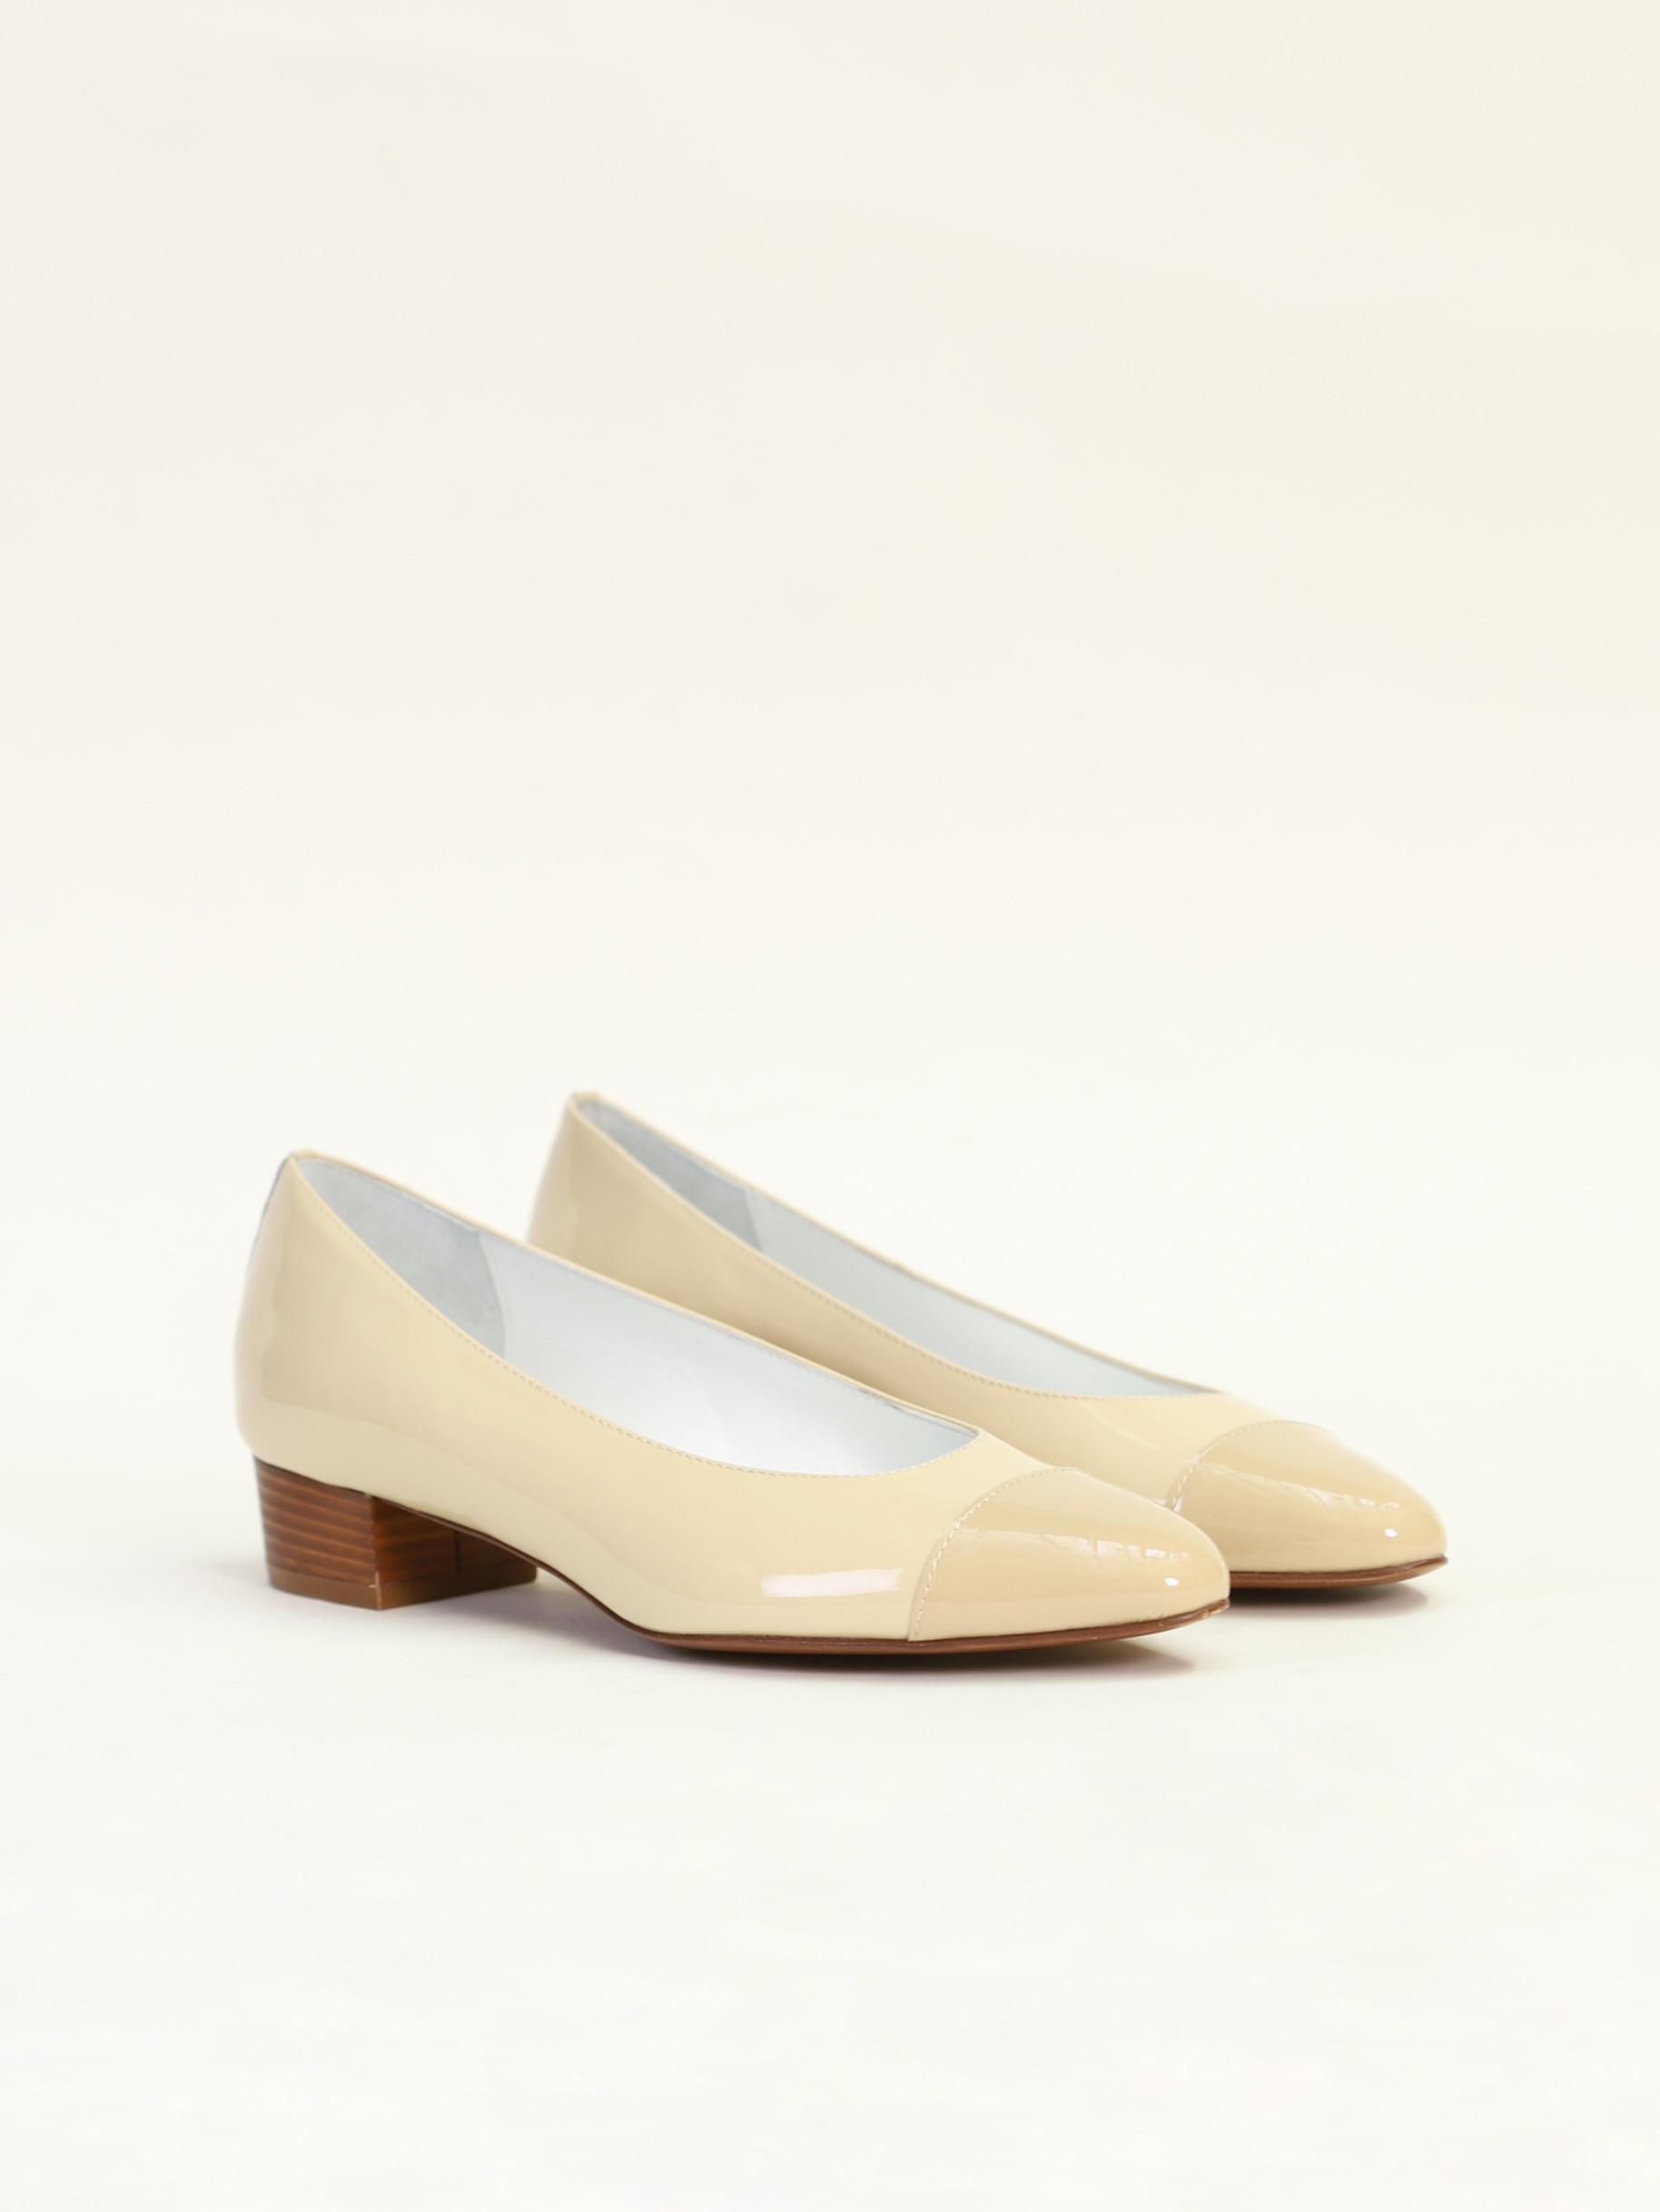 BRAVA beige patent leather ballet flats | Carel Paris Shoes